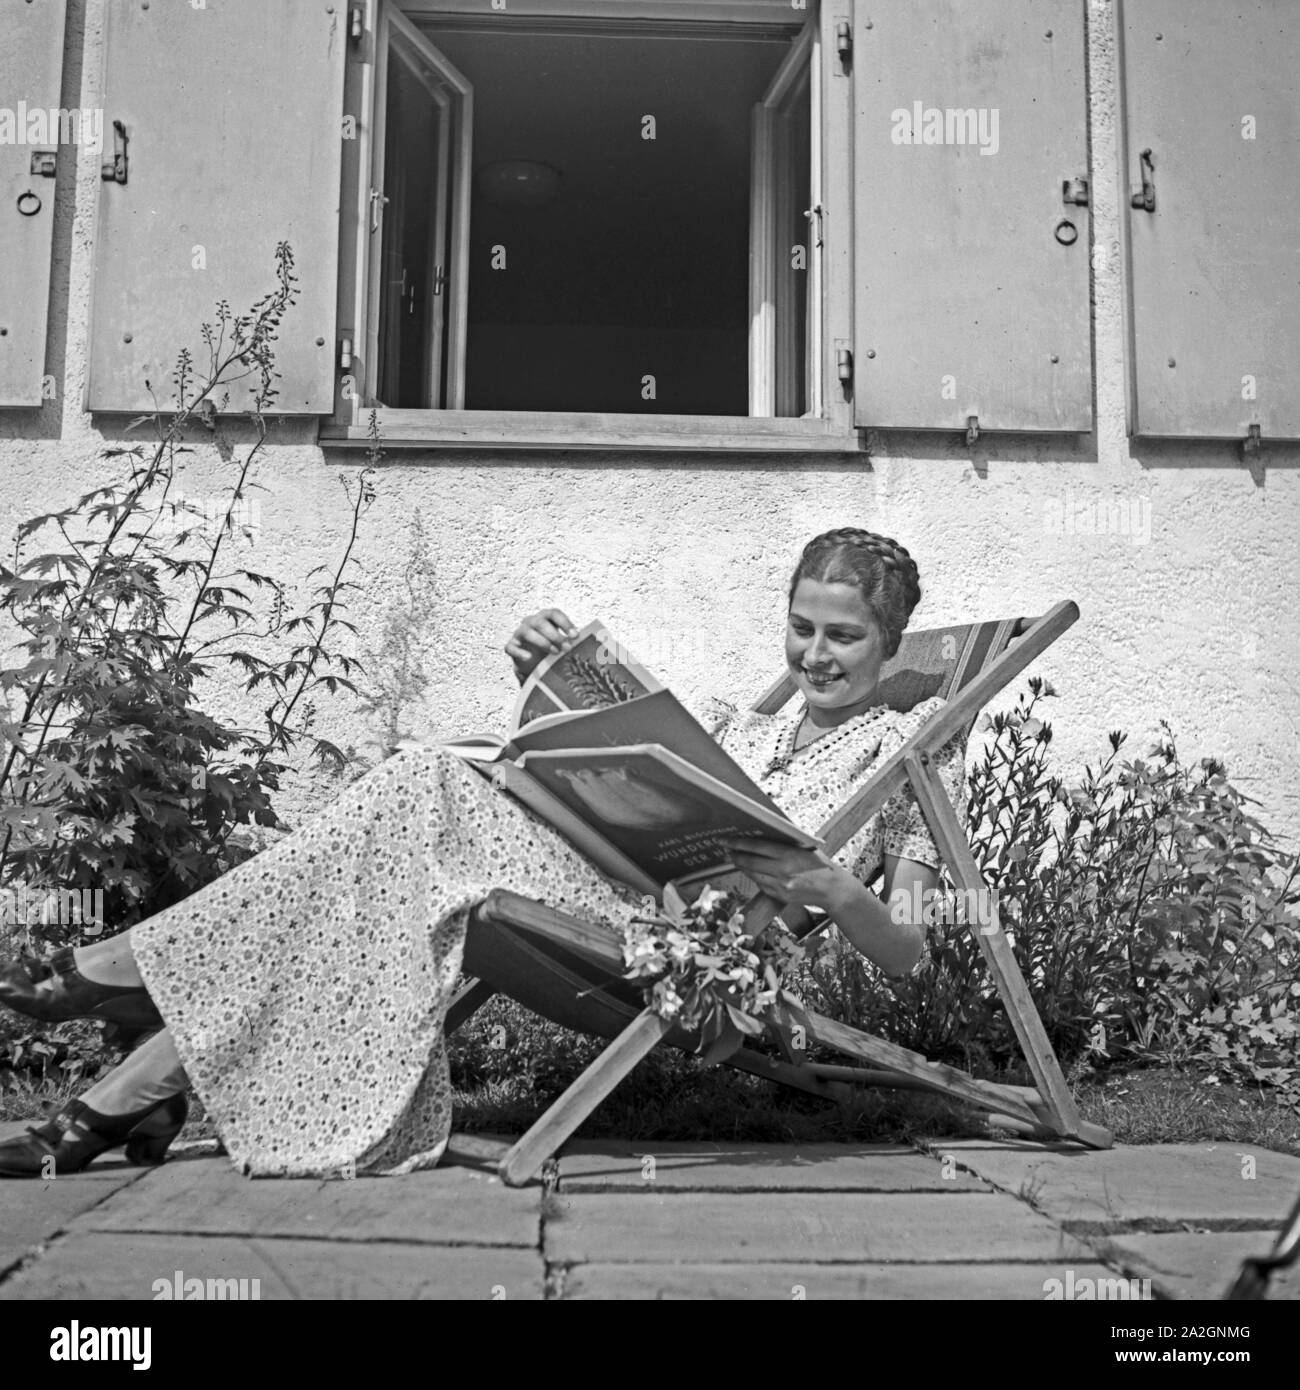 Eine Frau sitzt in einem Sonnenstuhl und blättert in einem Bildband mit Pflanzenfotografien von Karl Blossfeldt, Deutschland 1930er Jahre. Eine Frau in einem Liegestuhl sitzen und beobachten ein Fotobuch mit der Natur Fotografien von Karl Blossfeldt, Deutschland 1930. Stockfoto